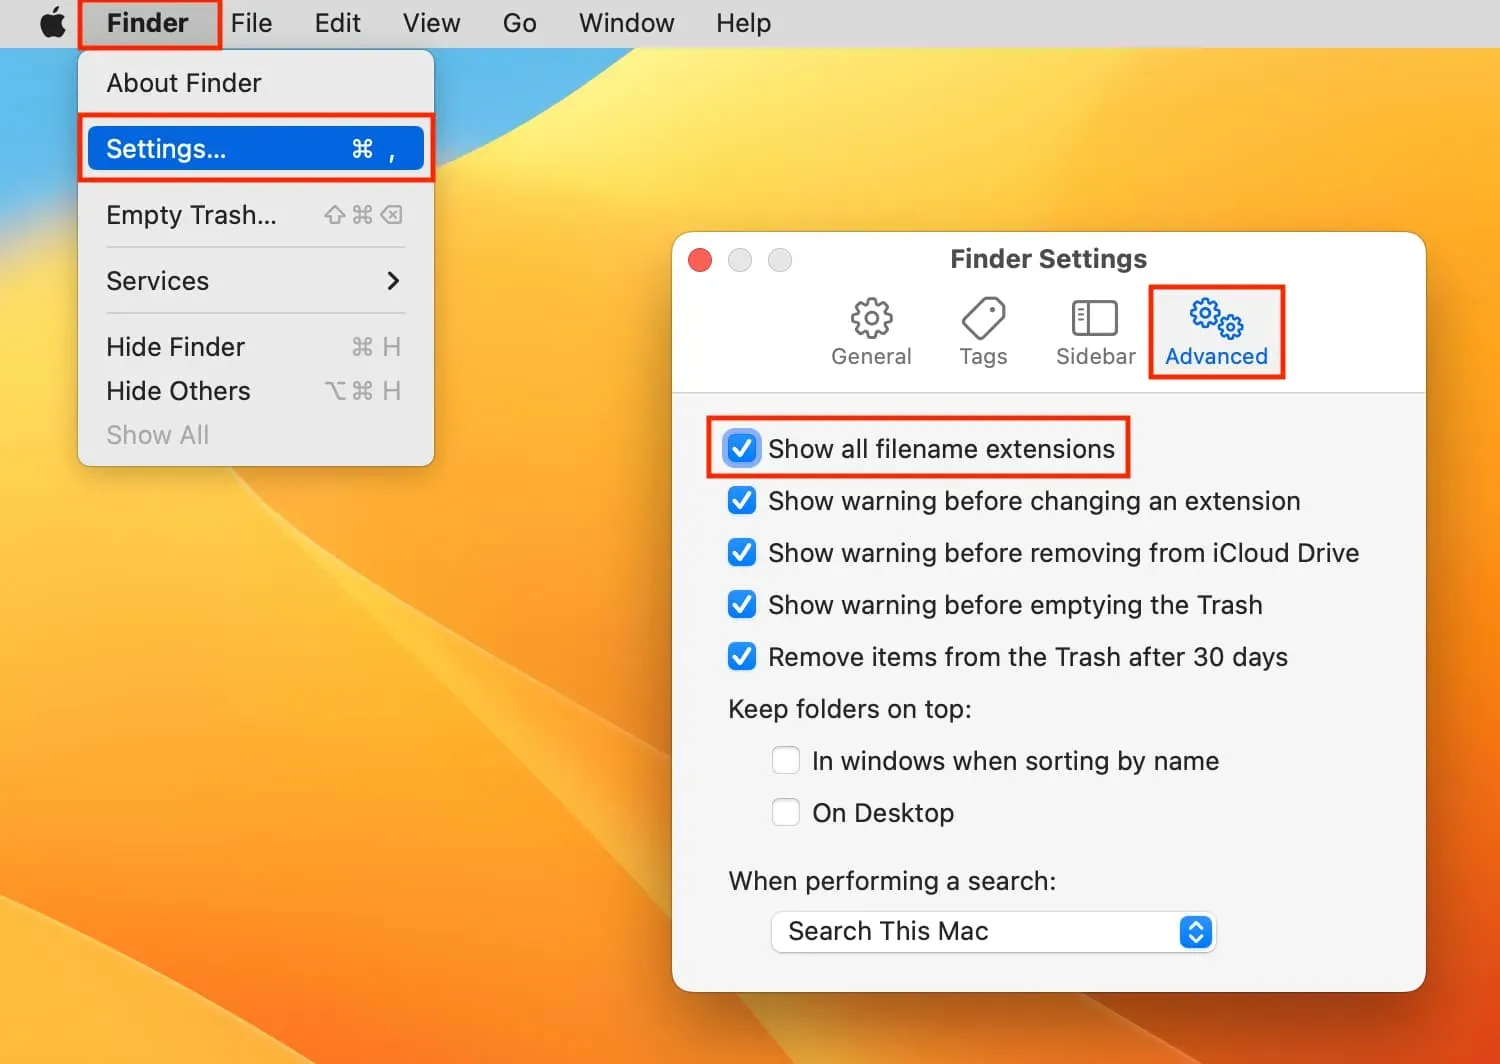 Afficher toutes les extensions de nom de fichier dans le Finder sur Mac